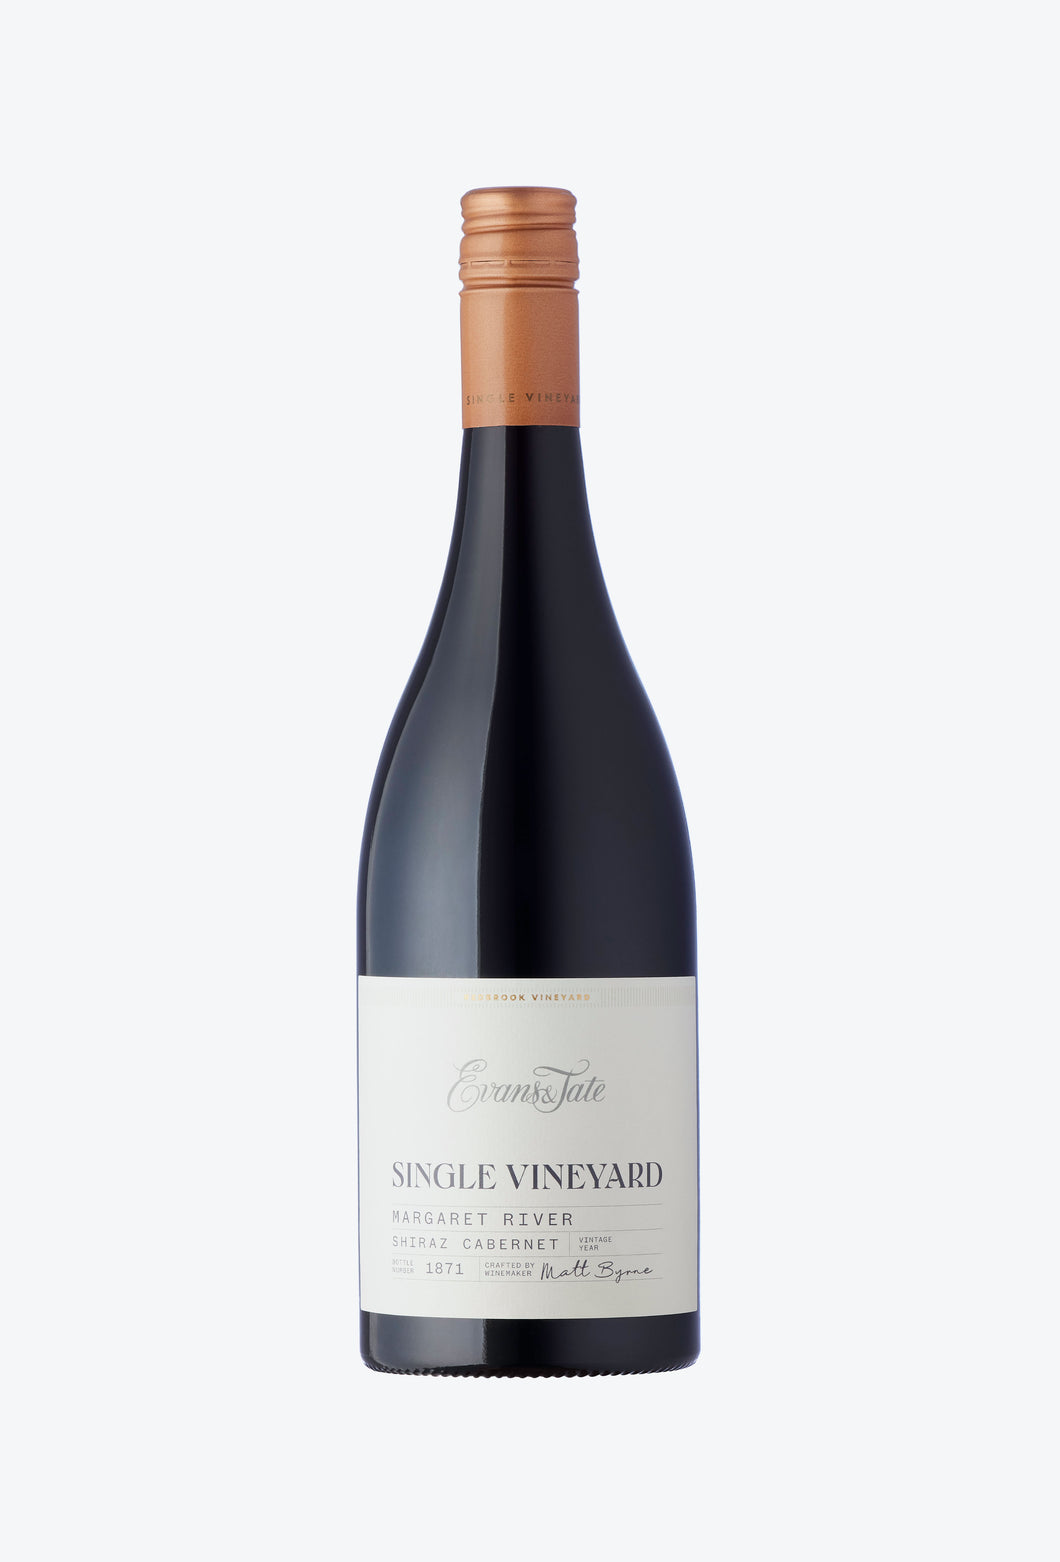 2020 Single Vineyard Shiraz Cabernet Sauvignon